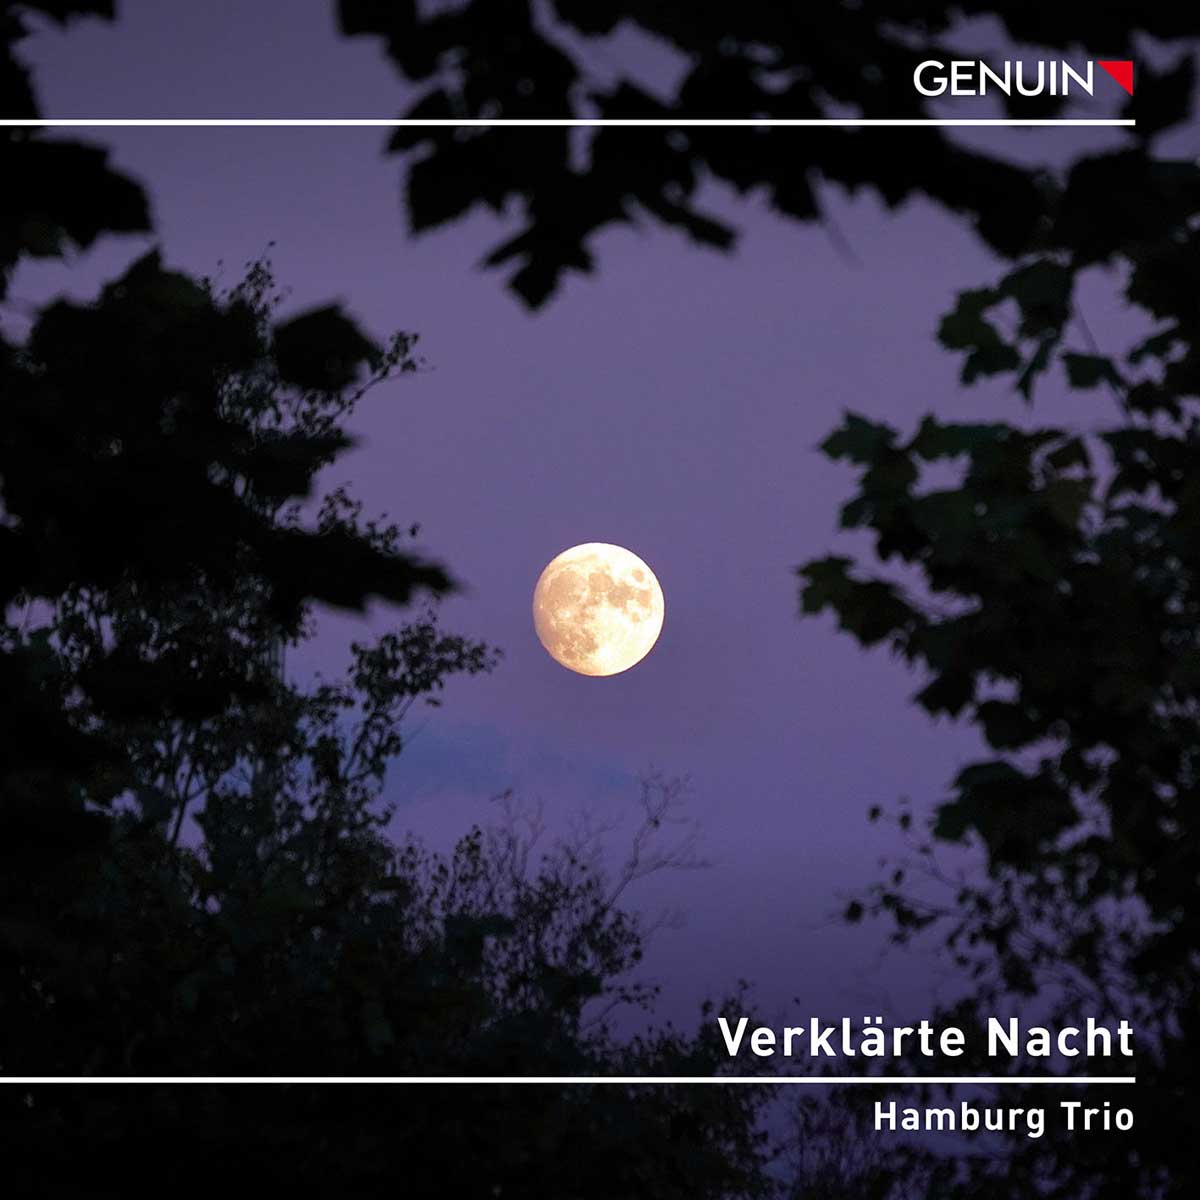 CD album cover 'Verklrte Nacht' (GEN 23812) with Hamburg Trio